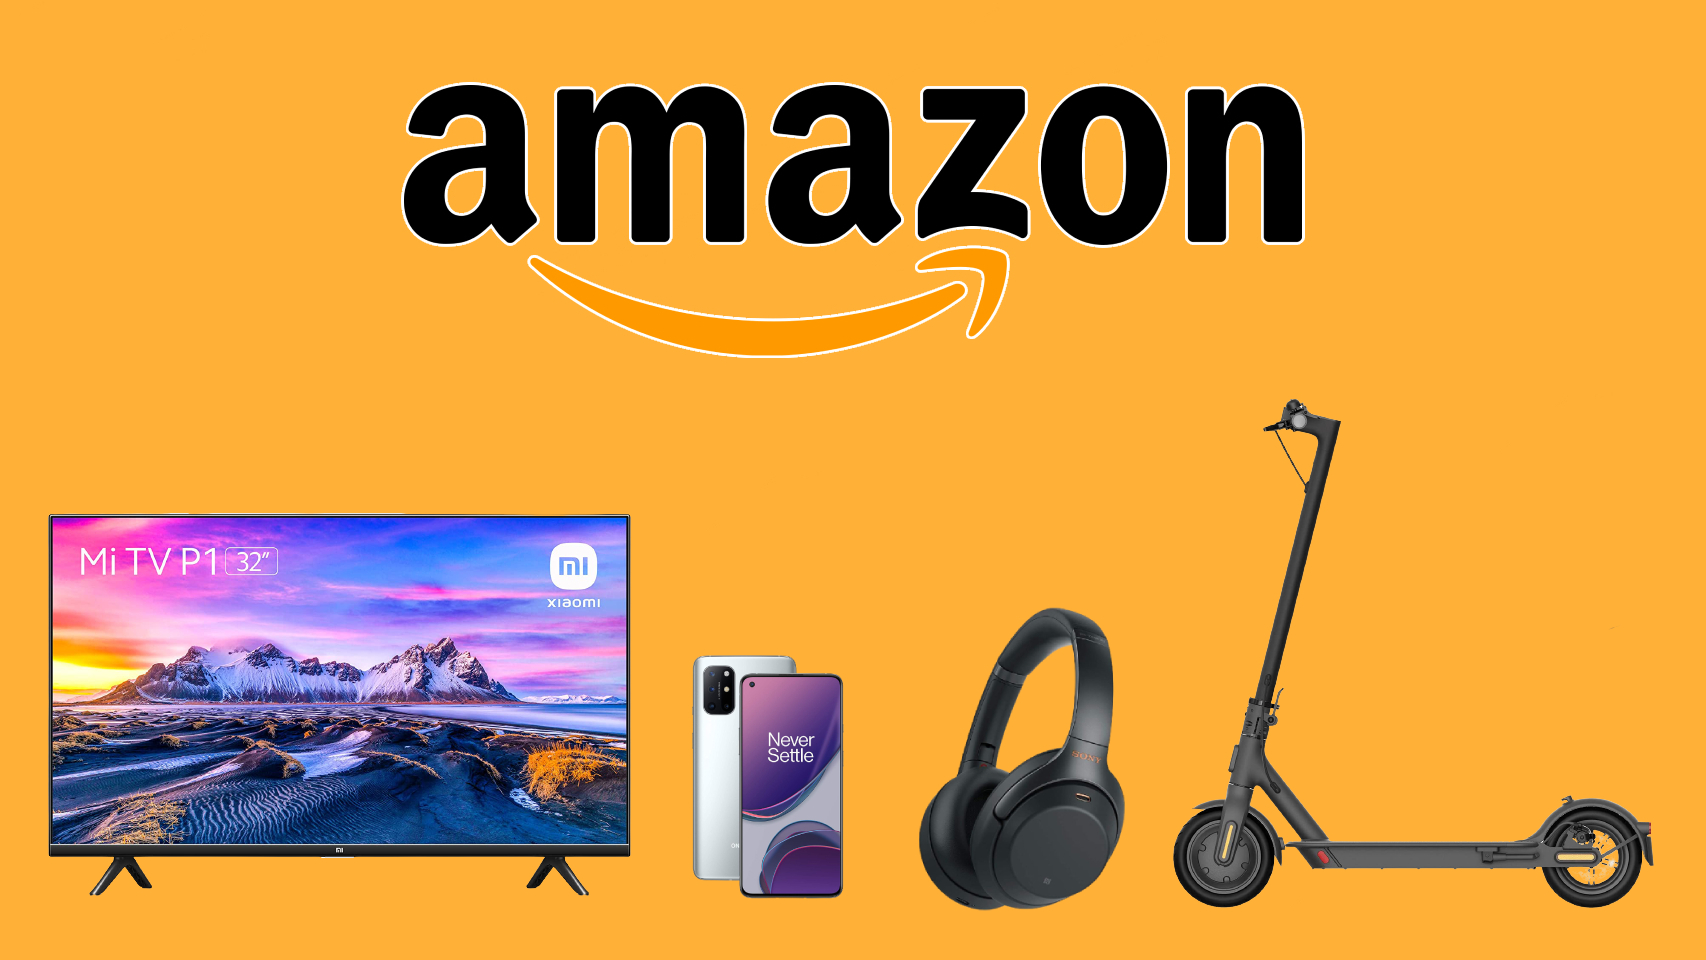 Amazon tiene a precio de chollo varios productos por el Black Friday.